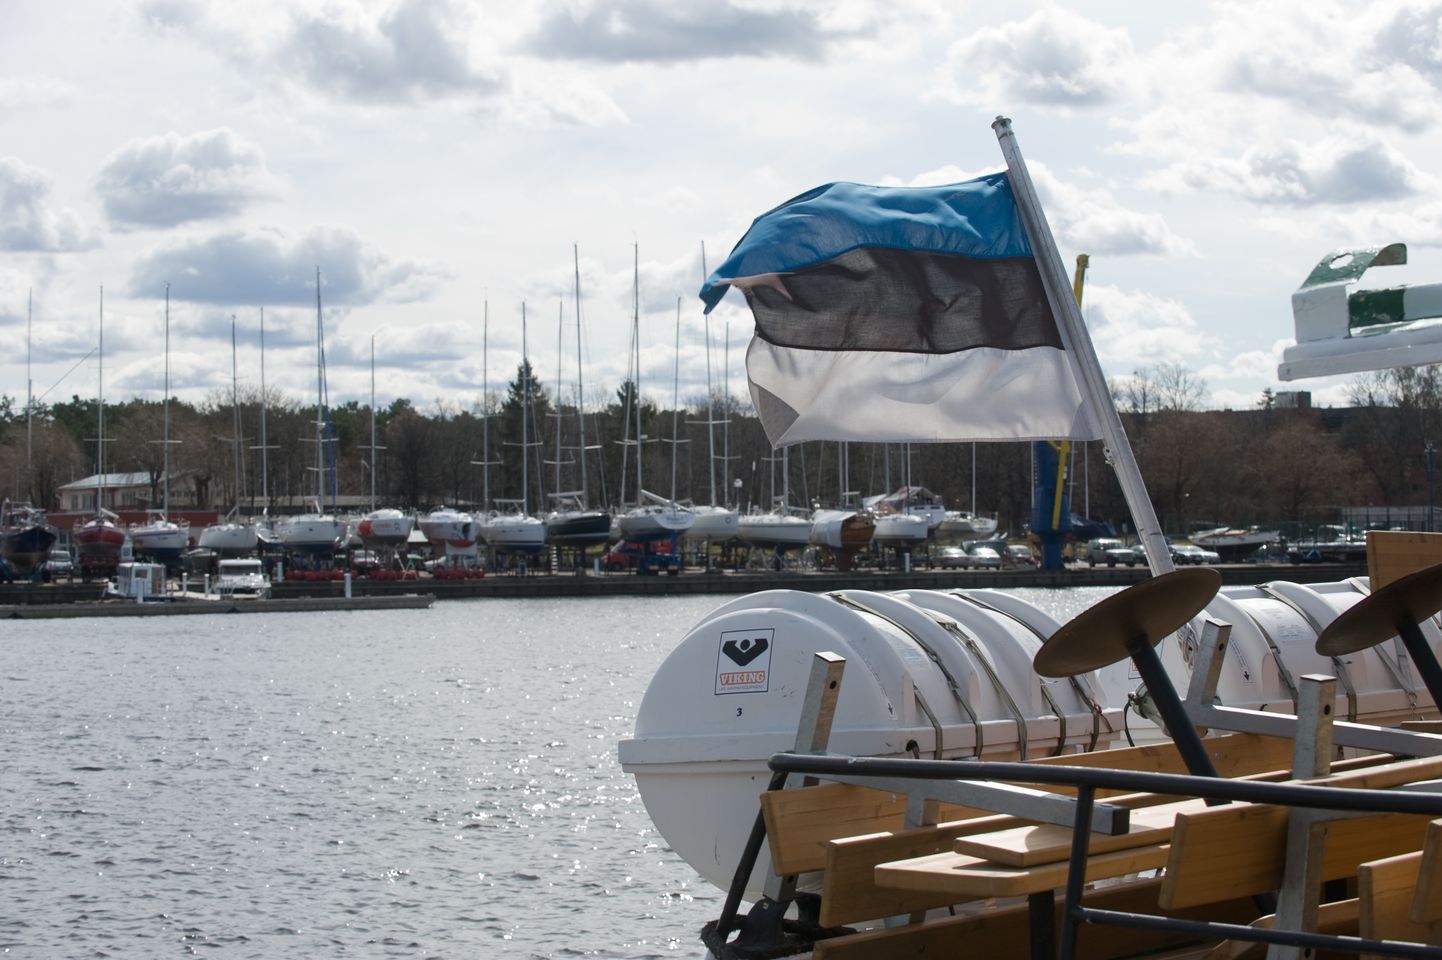 Monica ja teised Eesti lipu all olevad reisilaevad arutlusel oleva eelnõu järgi kaubalaevade maksusoodustust ei saa